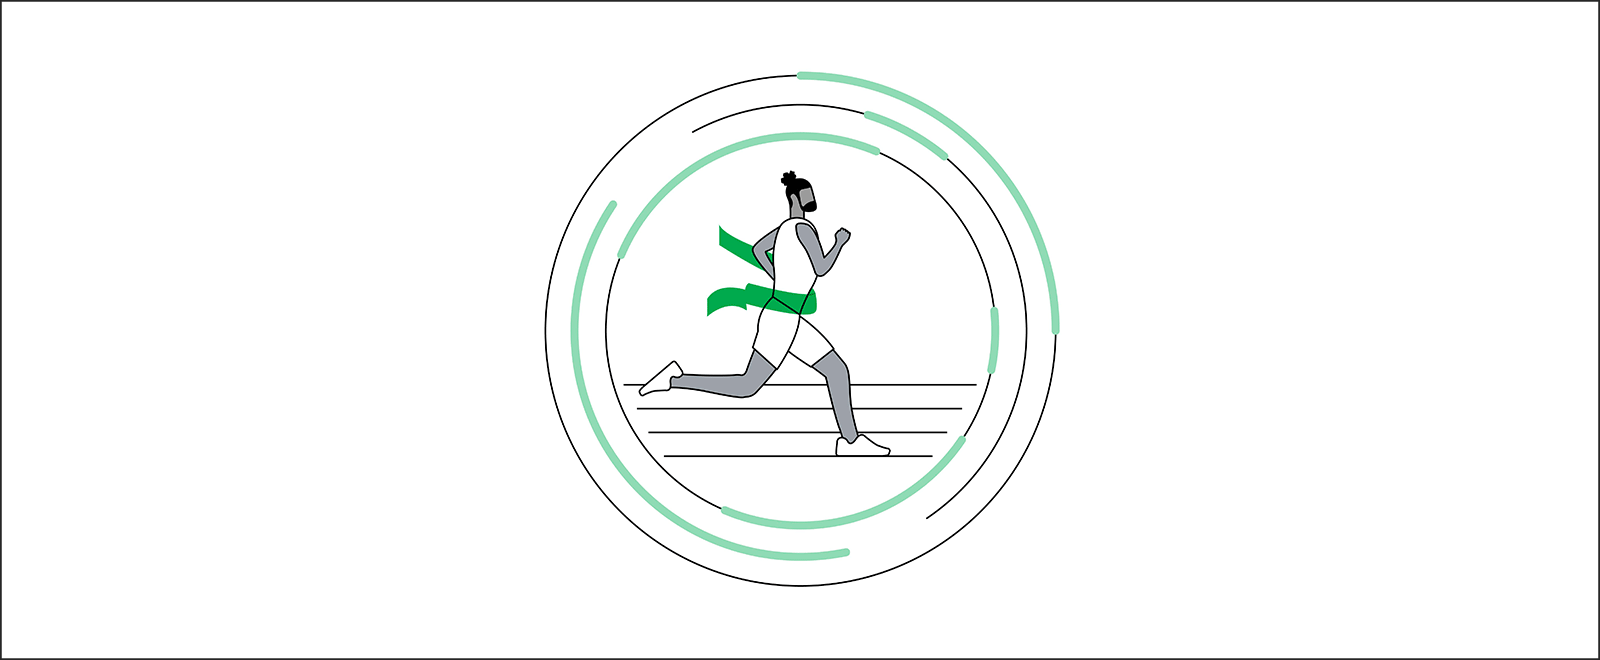 Un'immagine illustrata di un uomo nero che corre su una pista: è il primo a raggiungere il traguardo. Il nastro che taglia quando raggiunge il traguardo è di colore verde. È posizionato all'interno di un campo di forze con riflessi verdi.